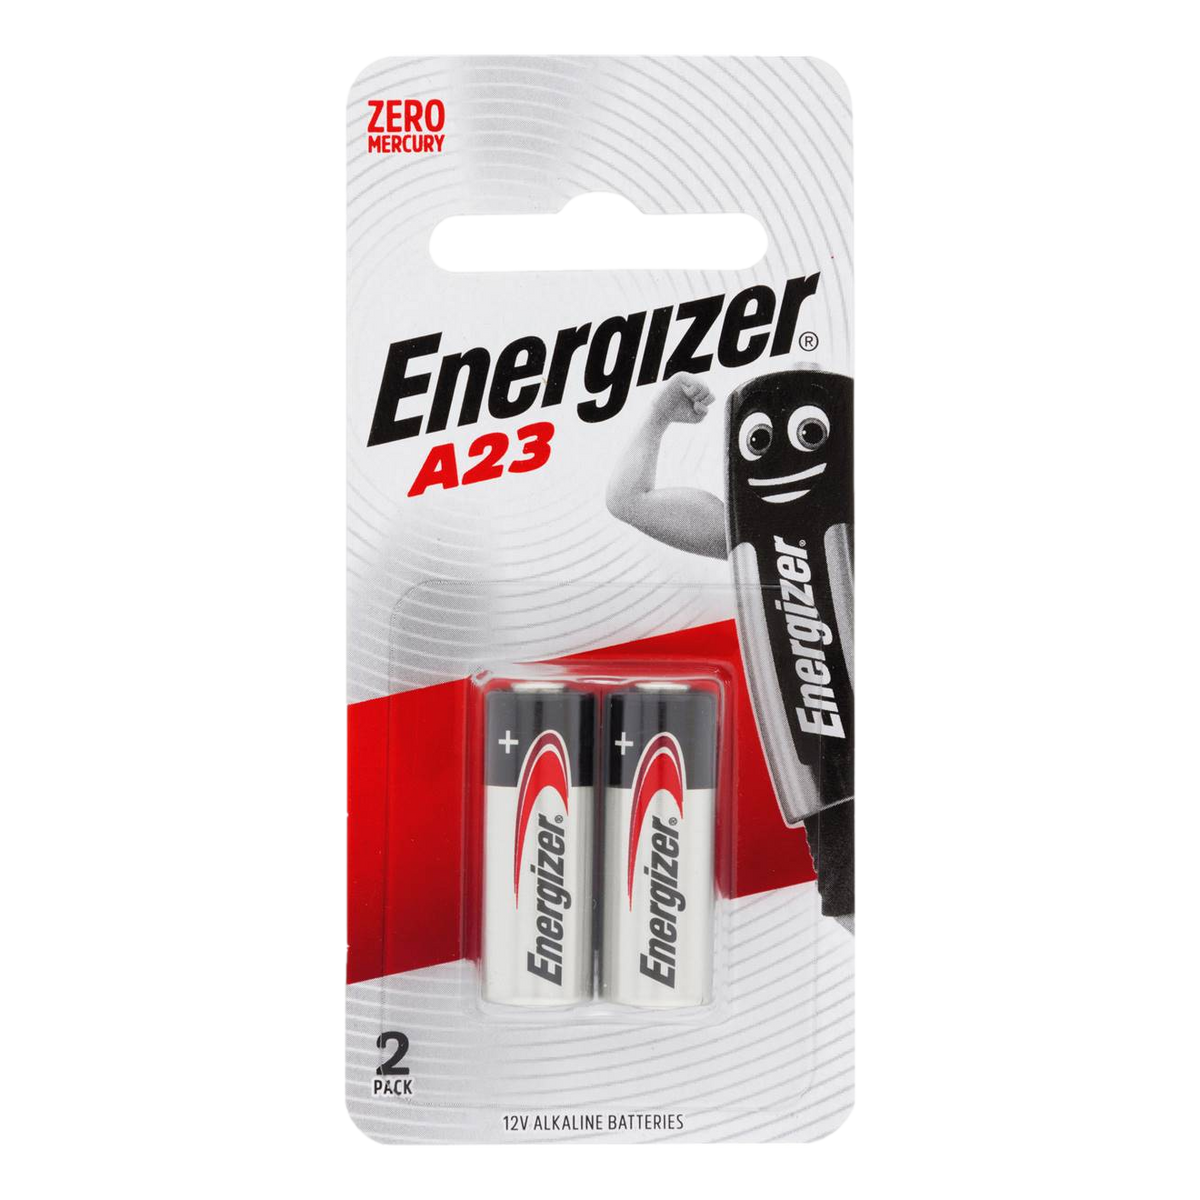 Energizer Battery A23 12V 2 Pack